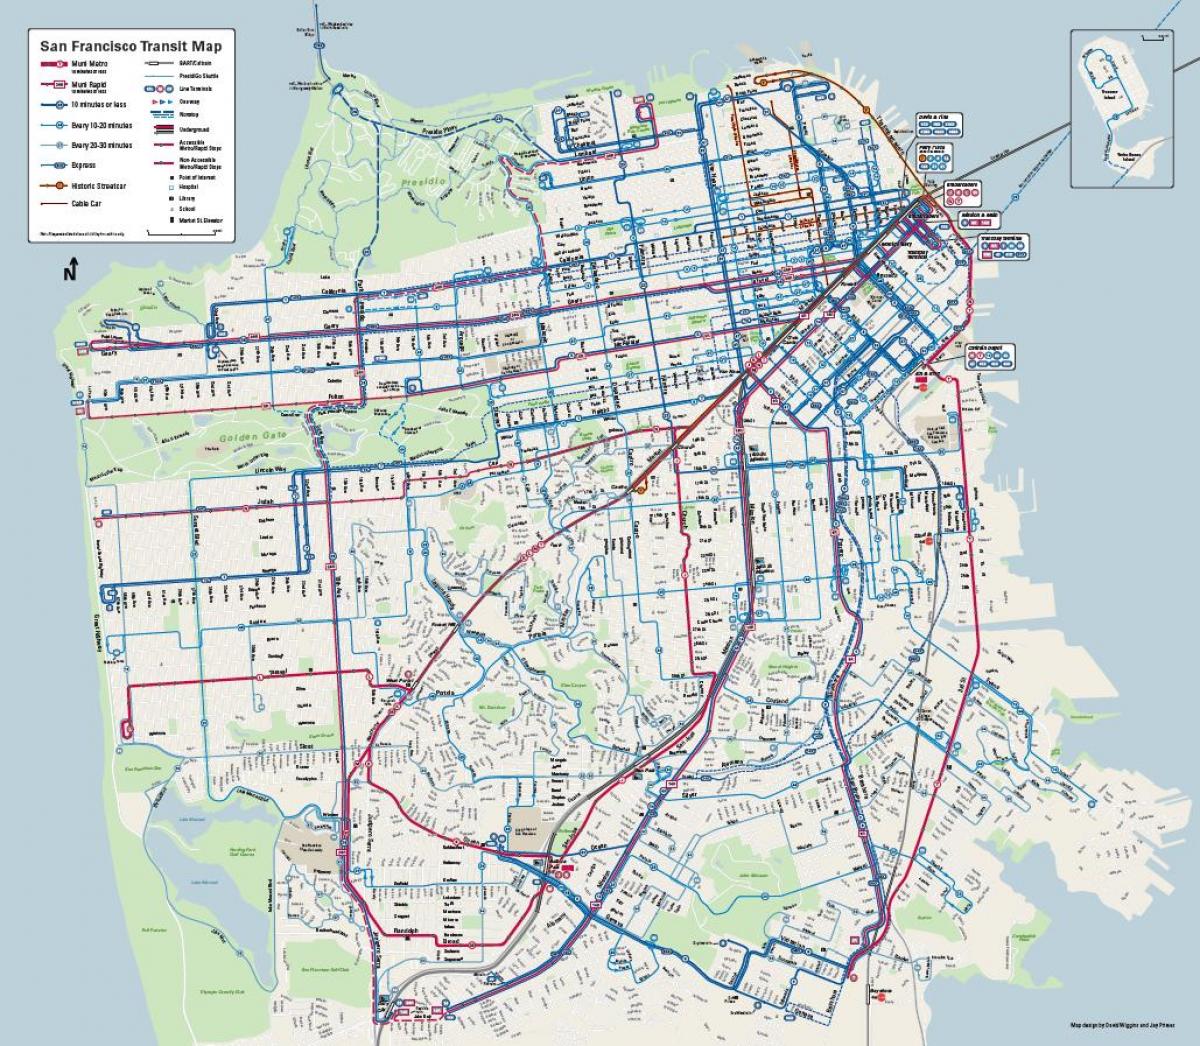 Համակարգային դող Սան Ֆրանցիսկոյում քարտեզի վրա